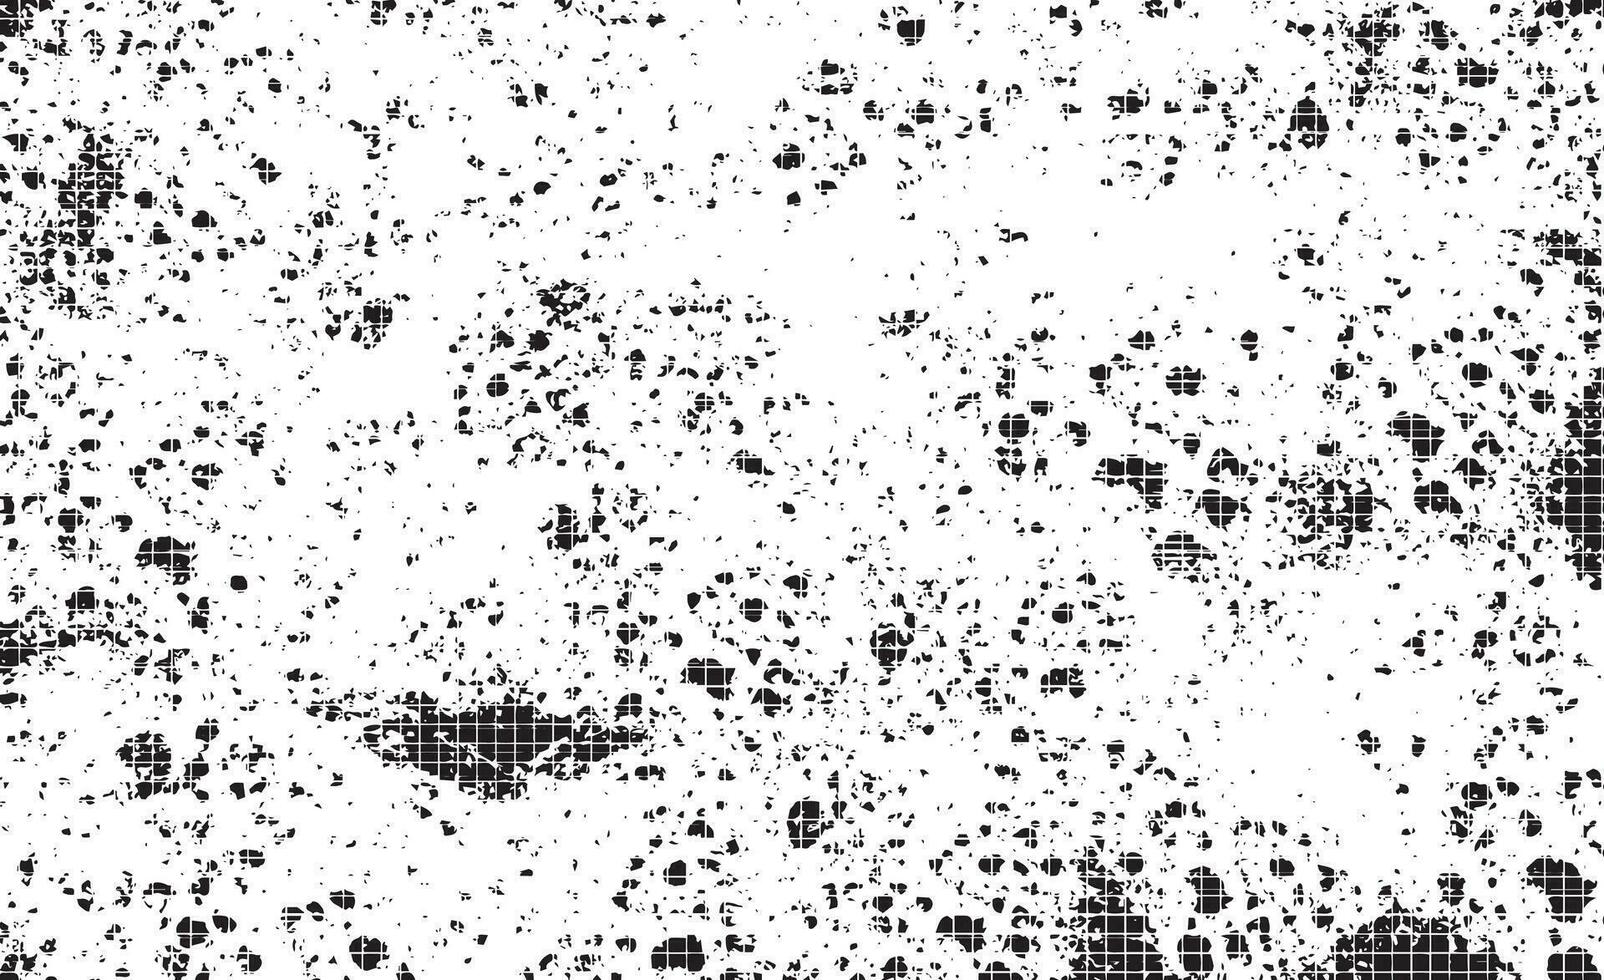 grunge schwarz-weiß not texture.dust overlay not korn, platzieren sie einfach illustration über einem beliebigen objekt, um grungy effekt zu erzeugen. vektor